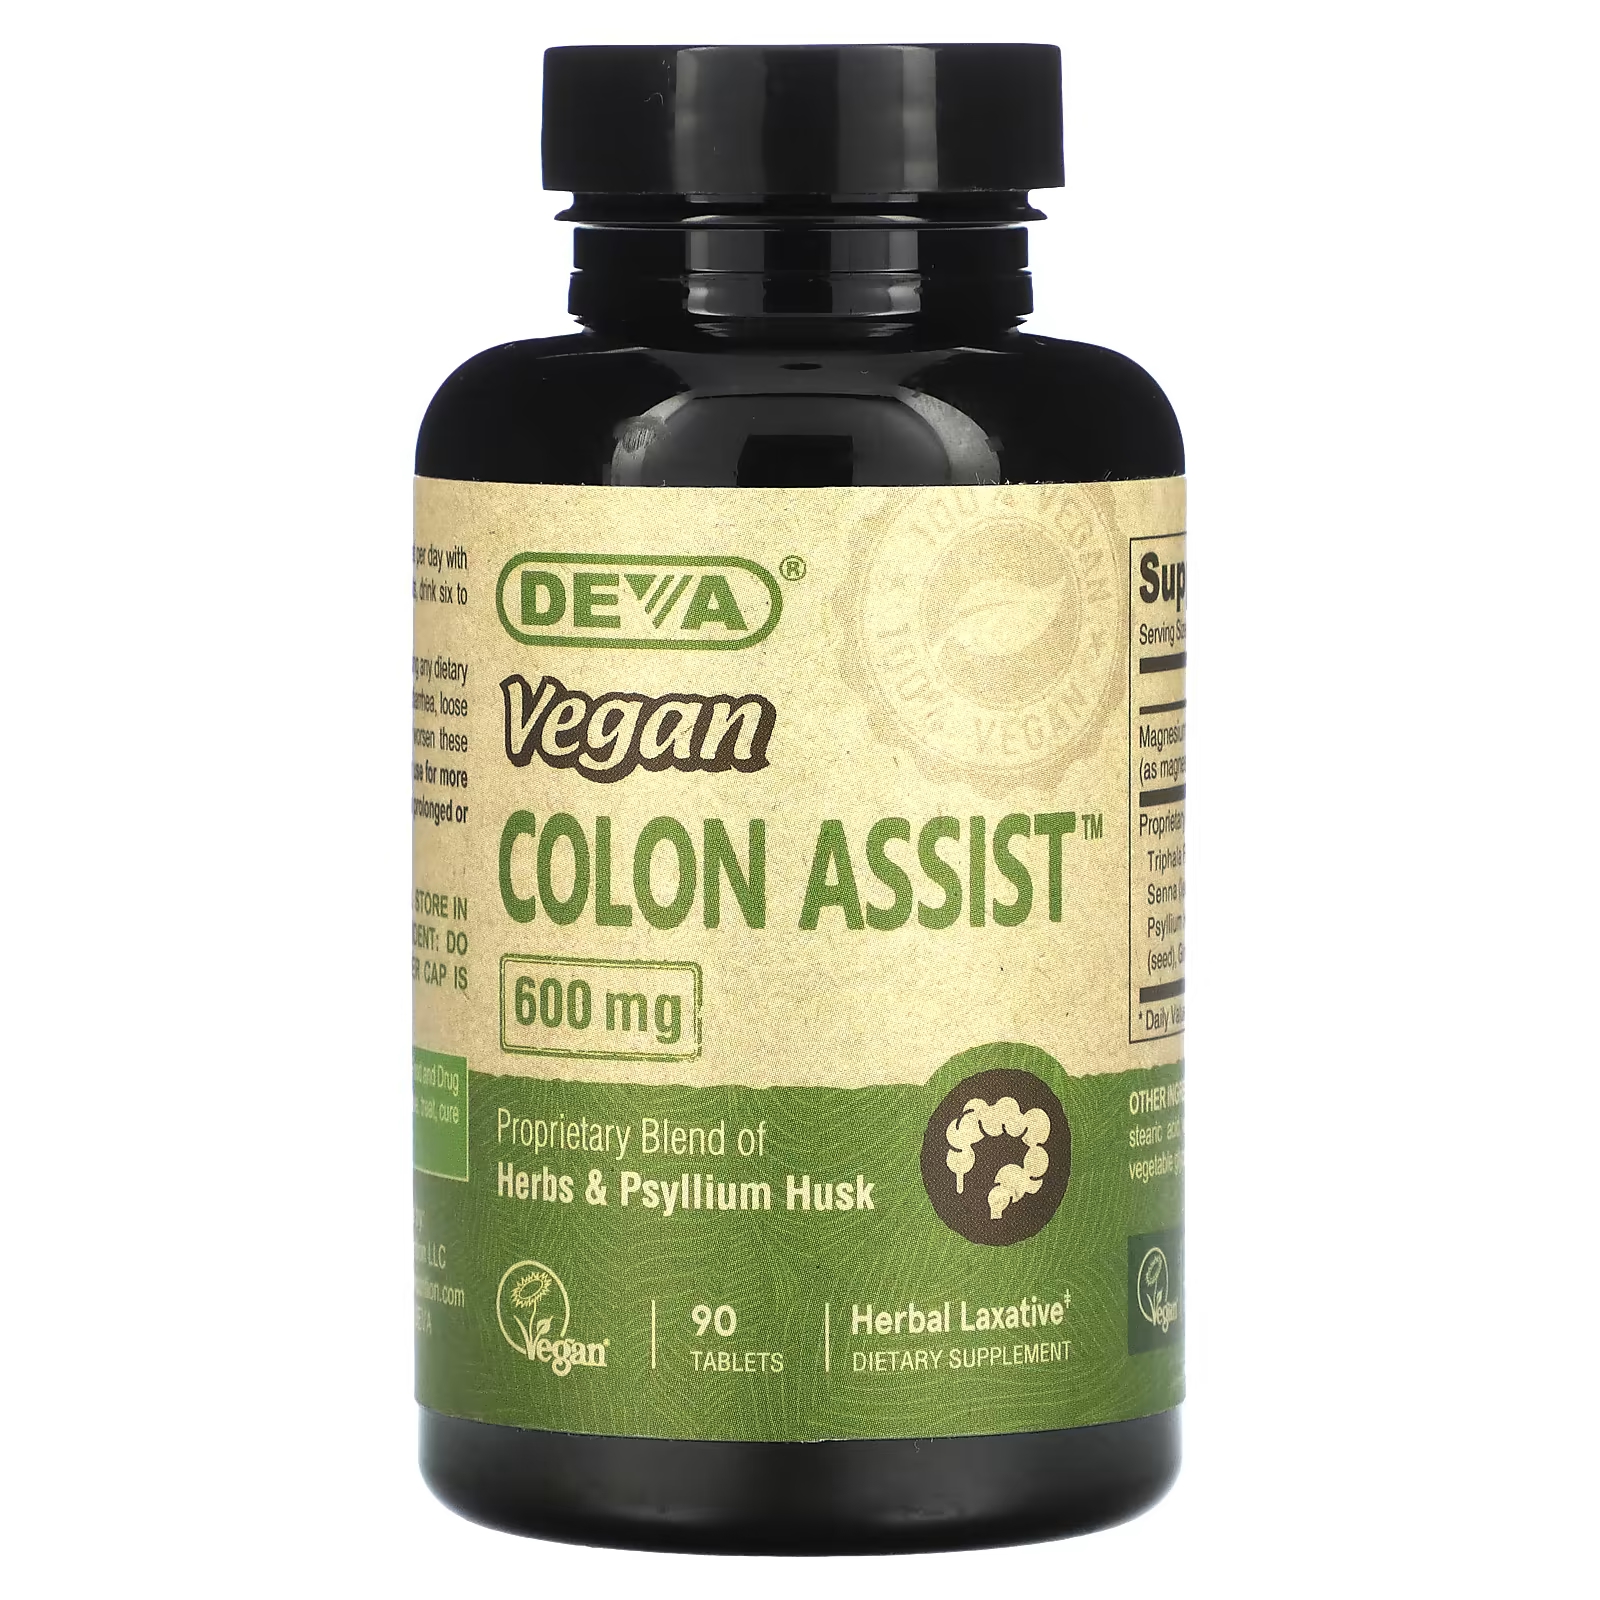 Пищевая добавка Deva Vegan Colon Assist 600 мг, 90 таблеток пищевая добавка deva vegan cla 90 веганских капсул